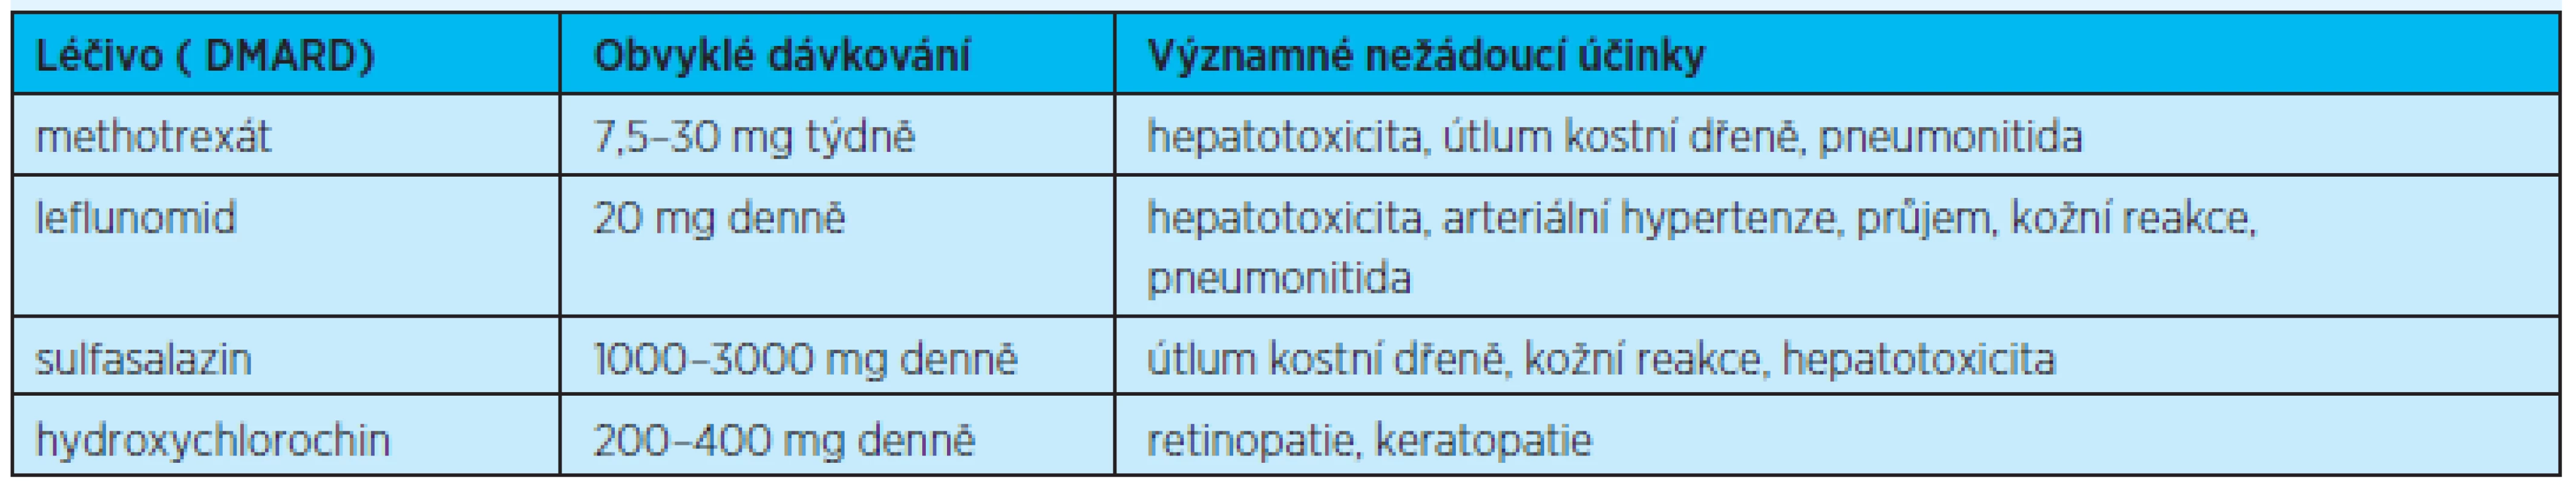 Chorobu modifikující léky RA, dávkování a nejčastější nežádoucí účinky&lt;sup&gt;(1)&lt;/sup&gt;